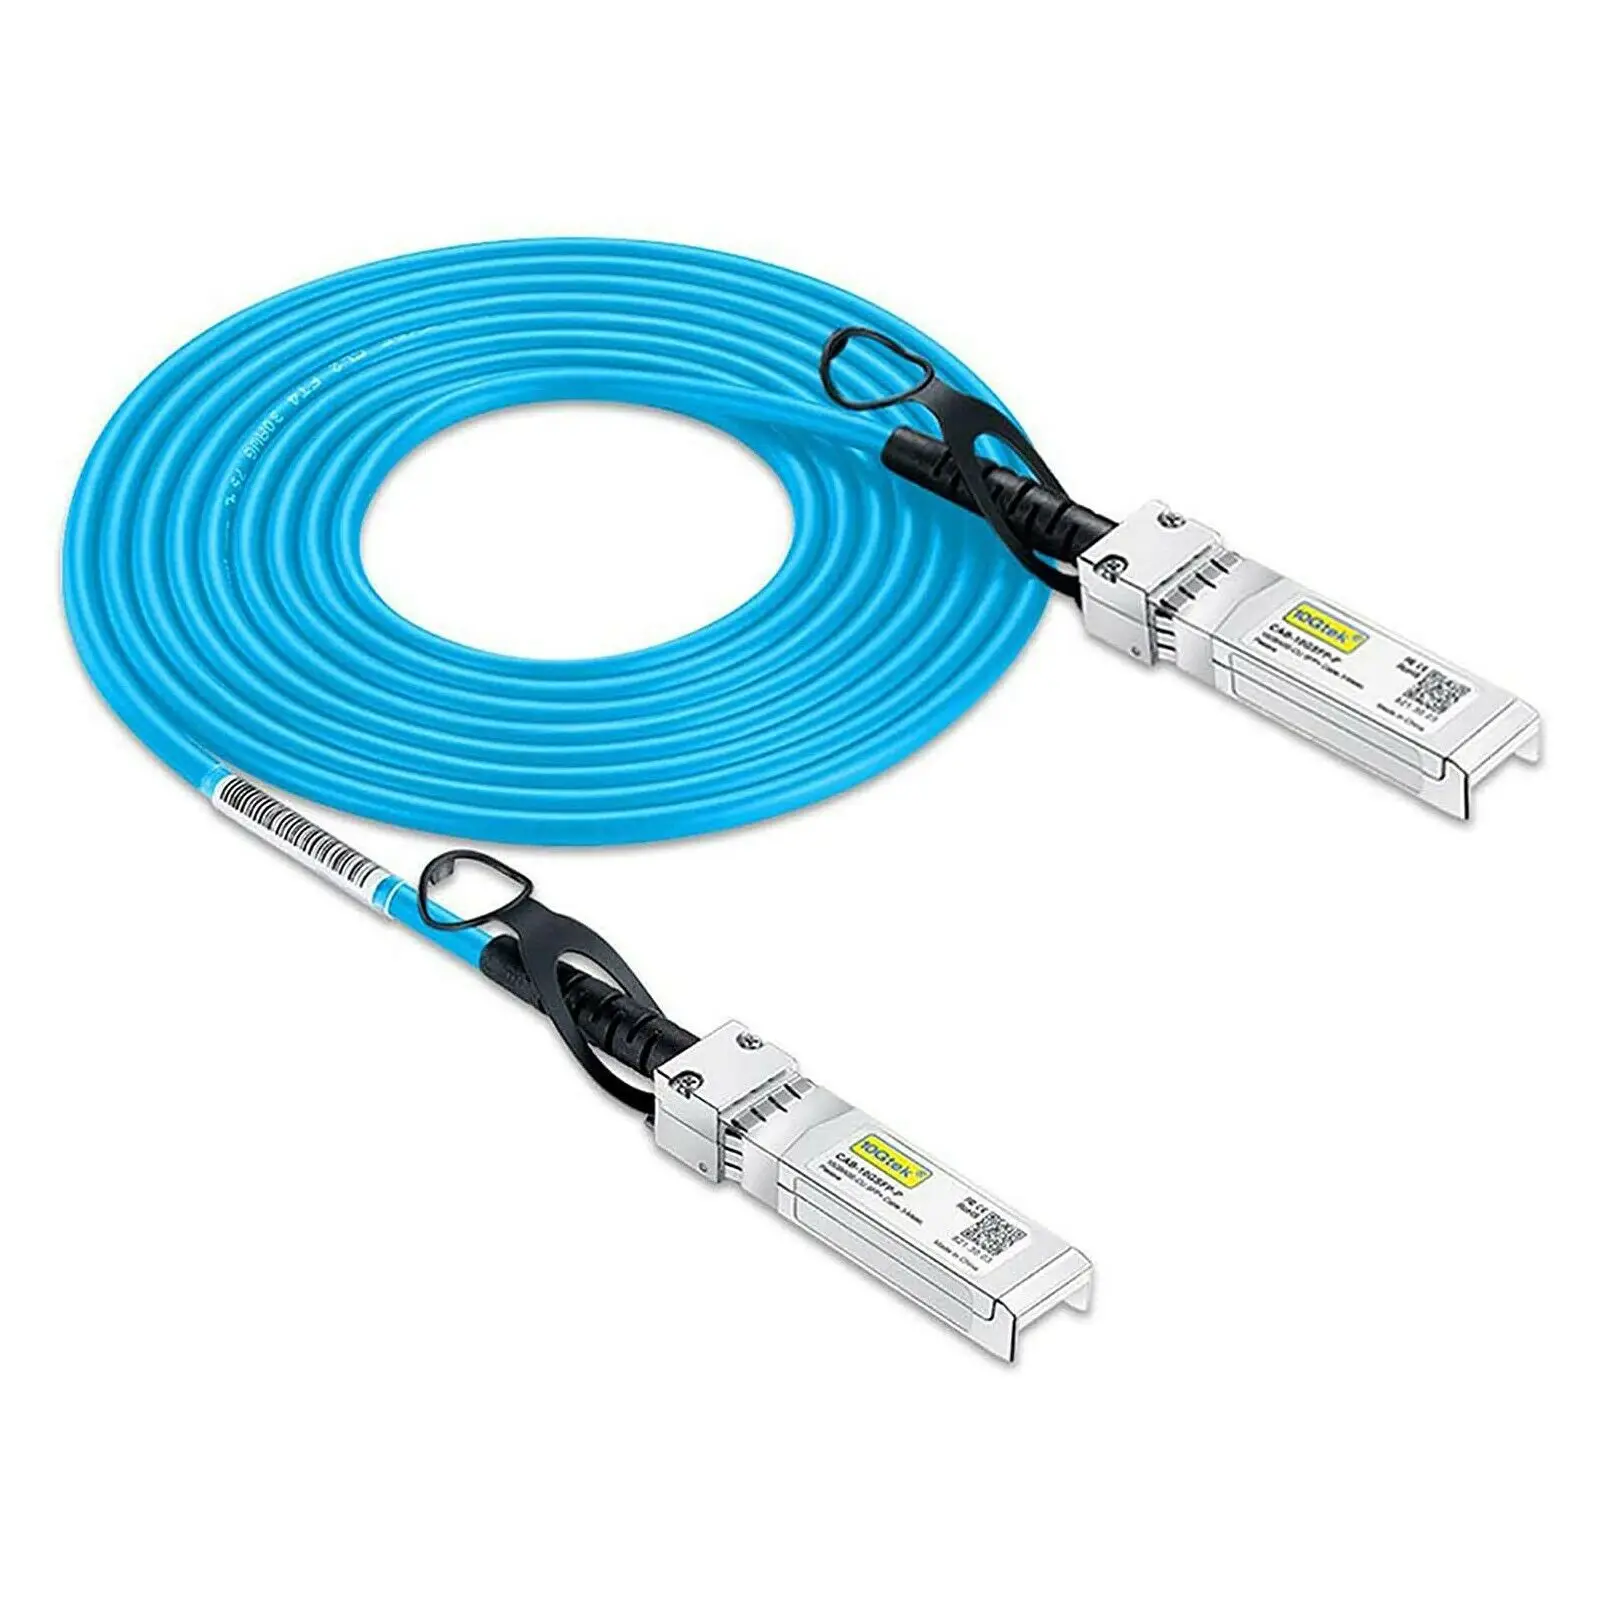 [Blue] Colored 10G SFP+ DAC Cable - Twinax SFP Cable for Cisco SFP-H10GB-CU1M, Arista, Ubiquiti,D-Link, Netgear,1-Meter(3.3ft) комплект накладок valve csgo blue camo для steam link